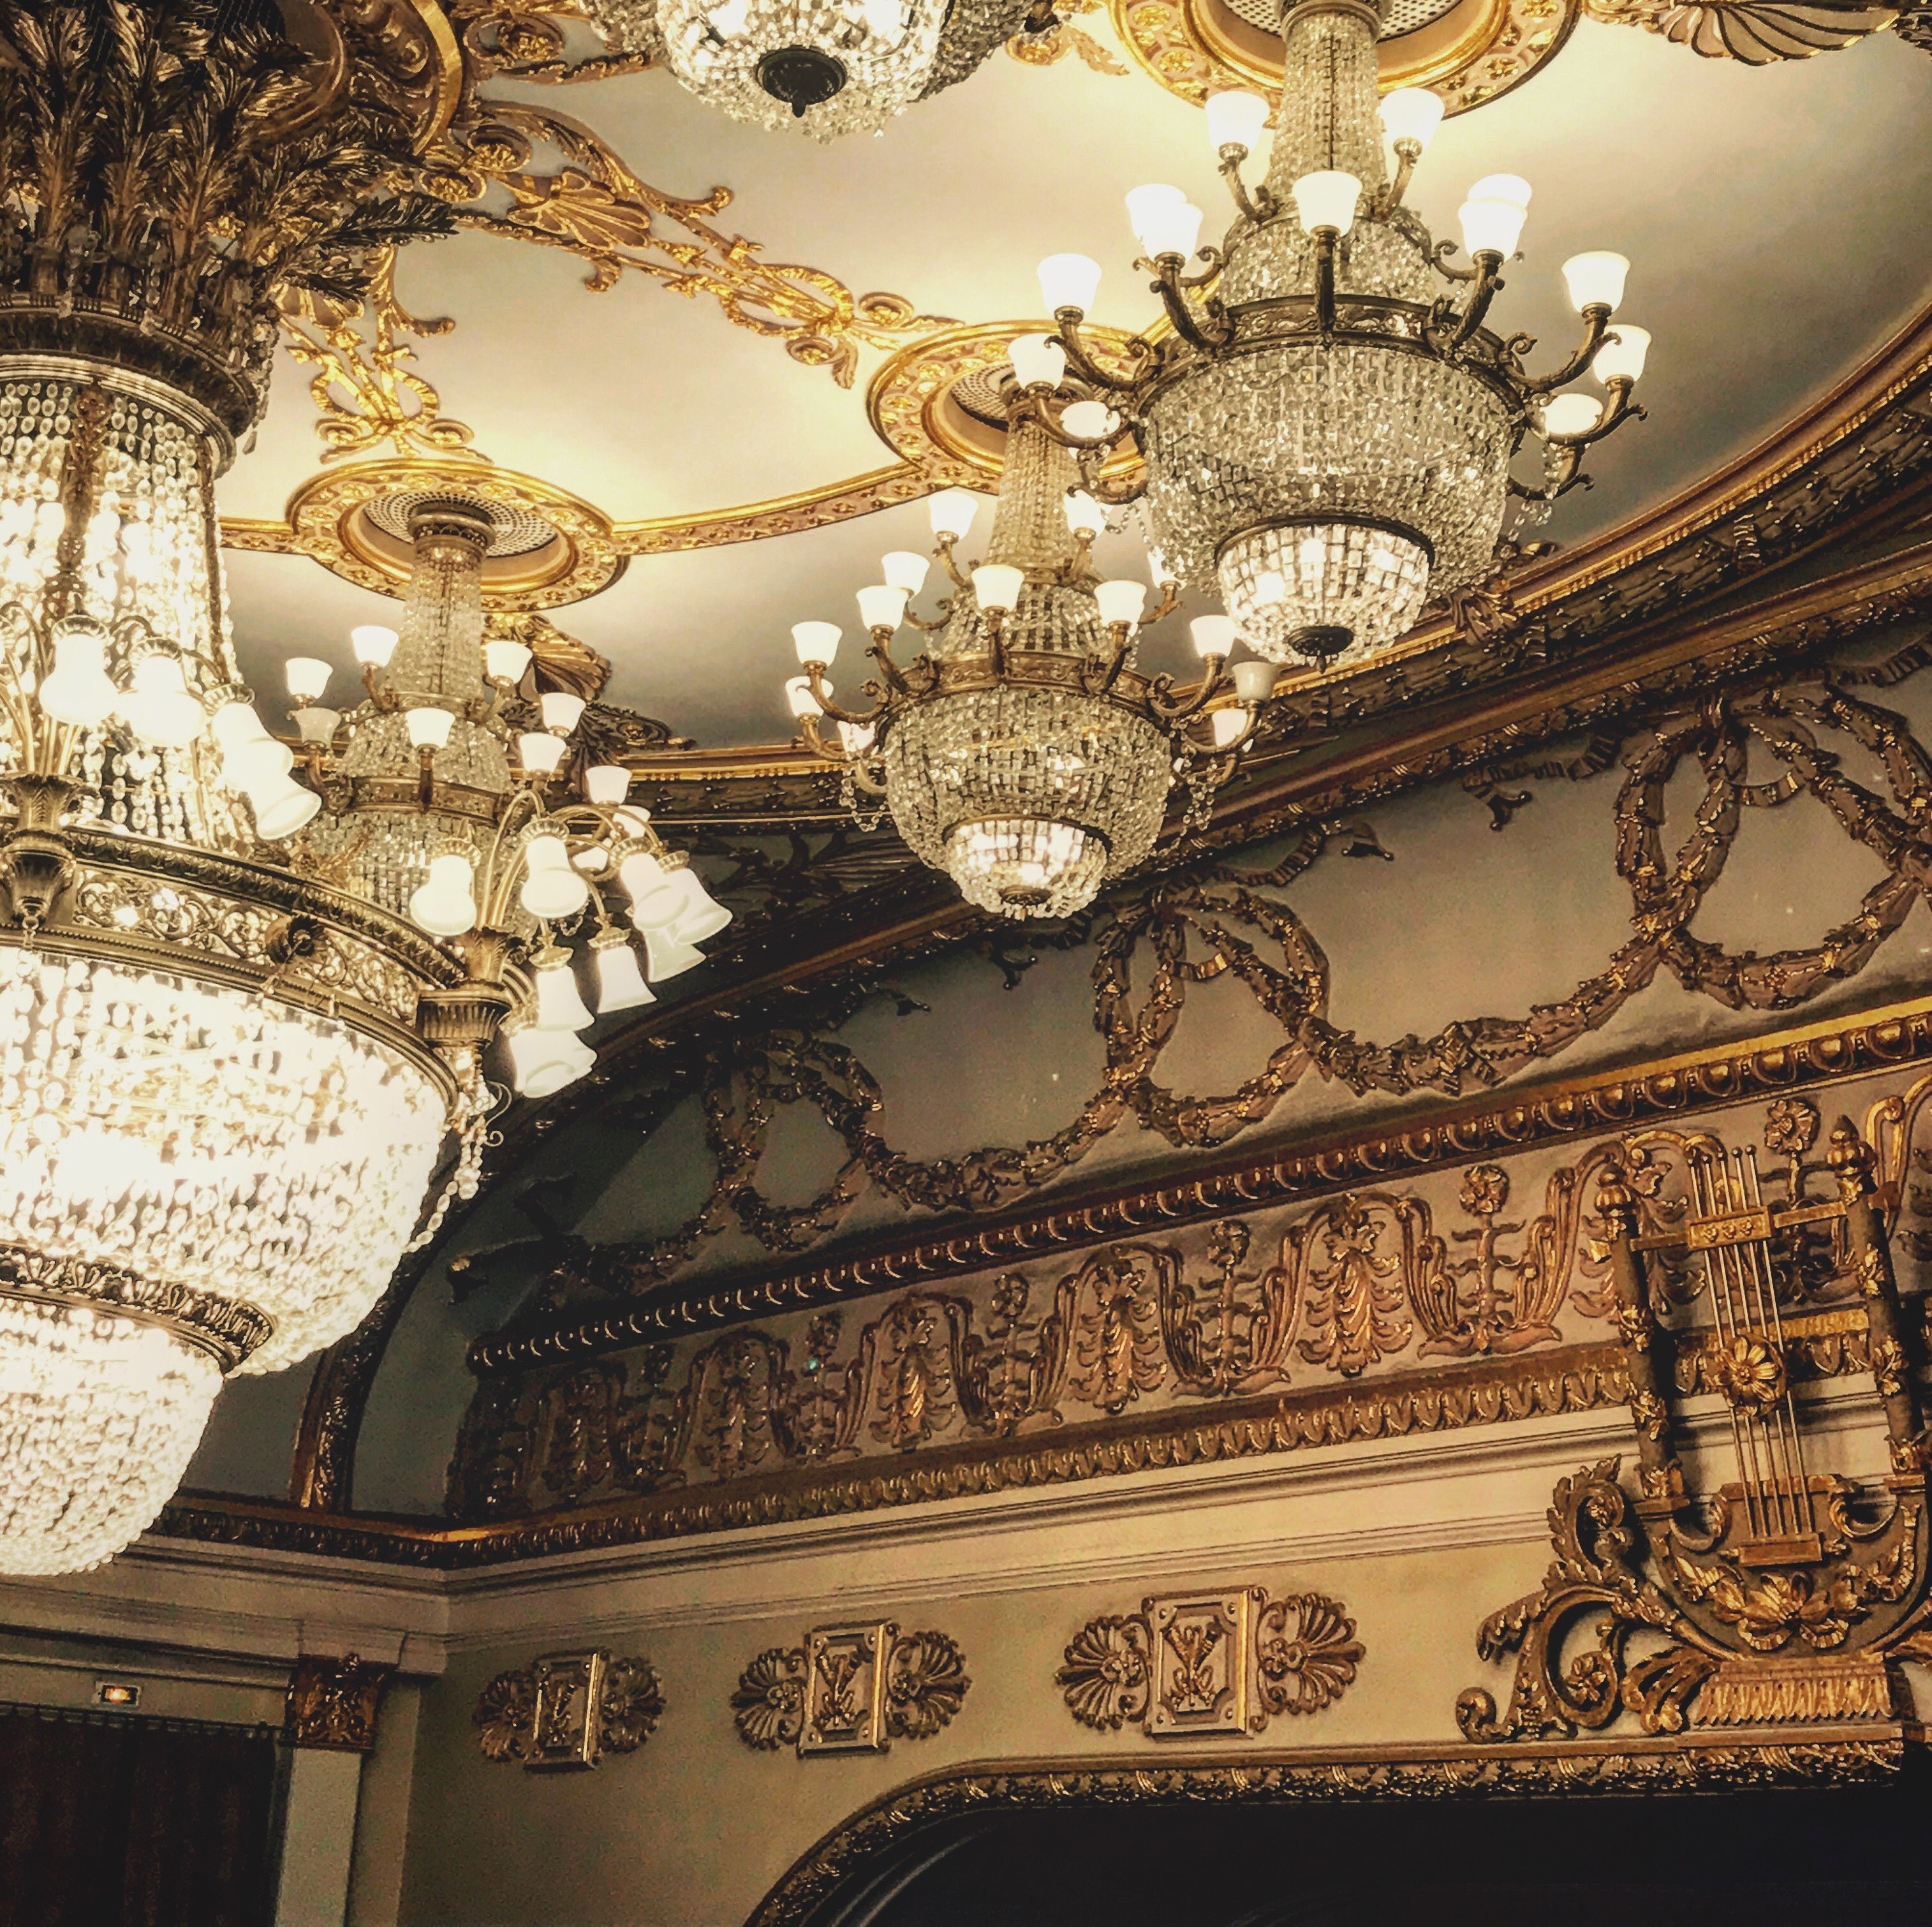 театр оперы и балета екатеринбург